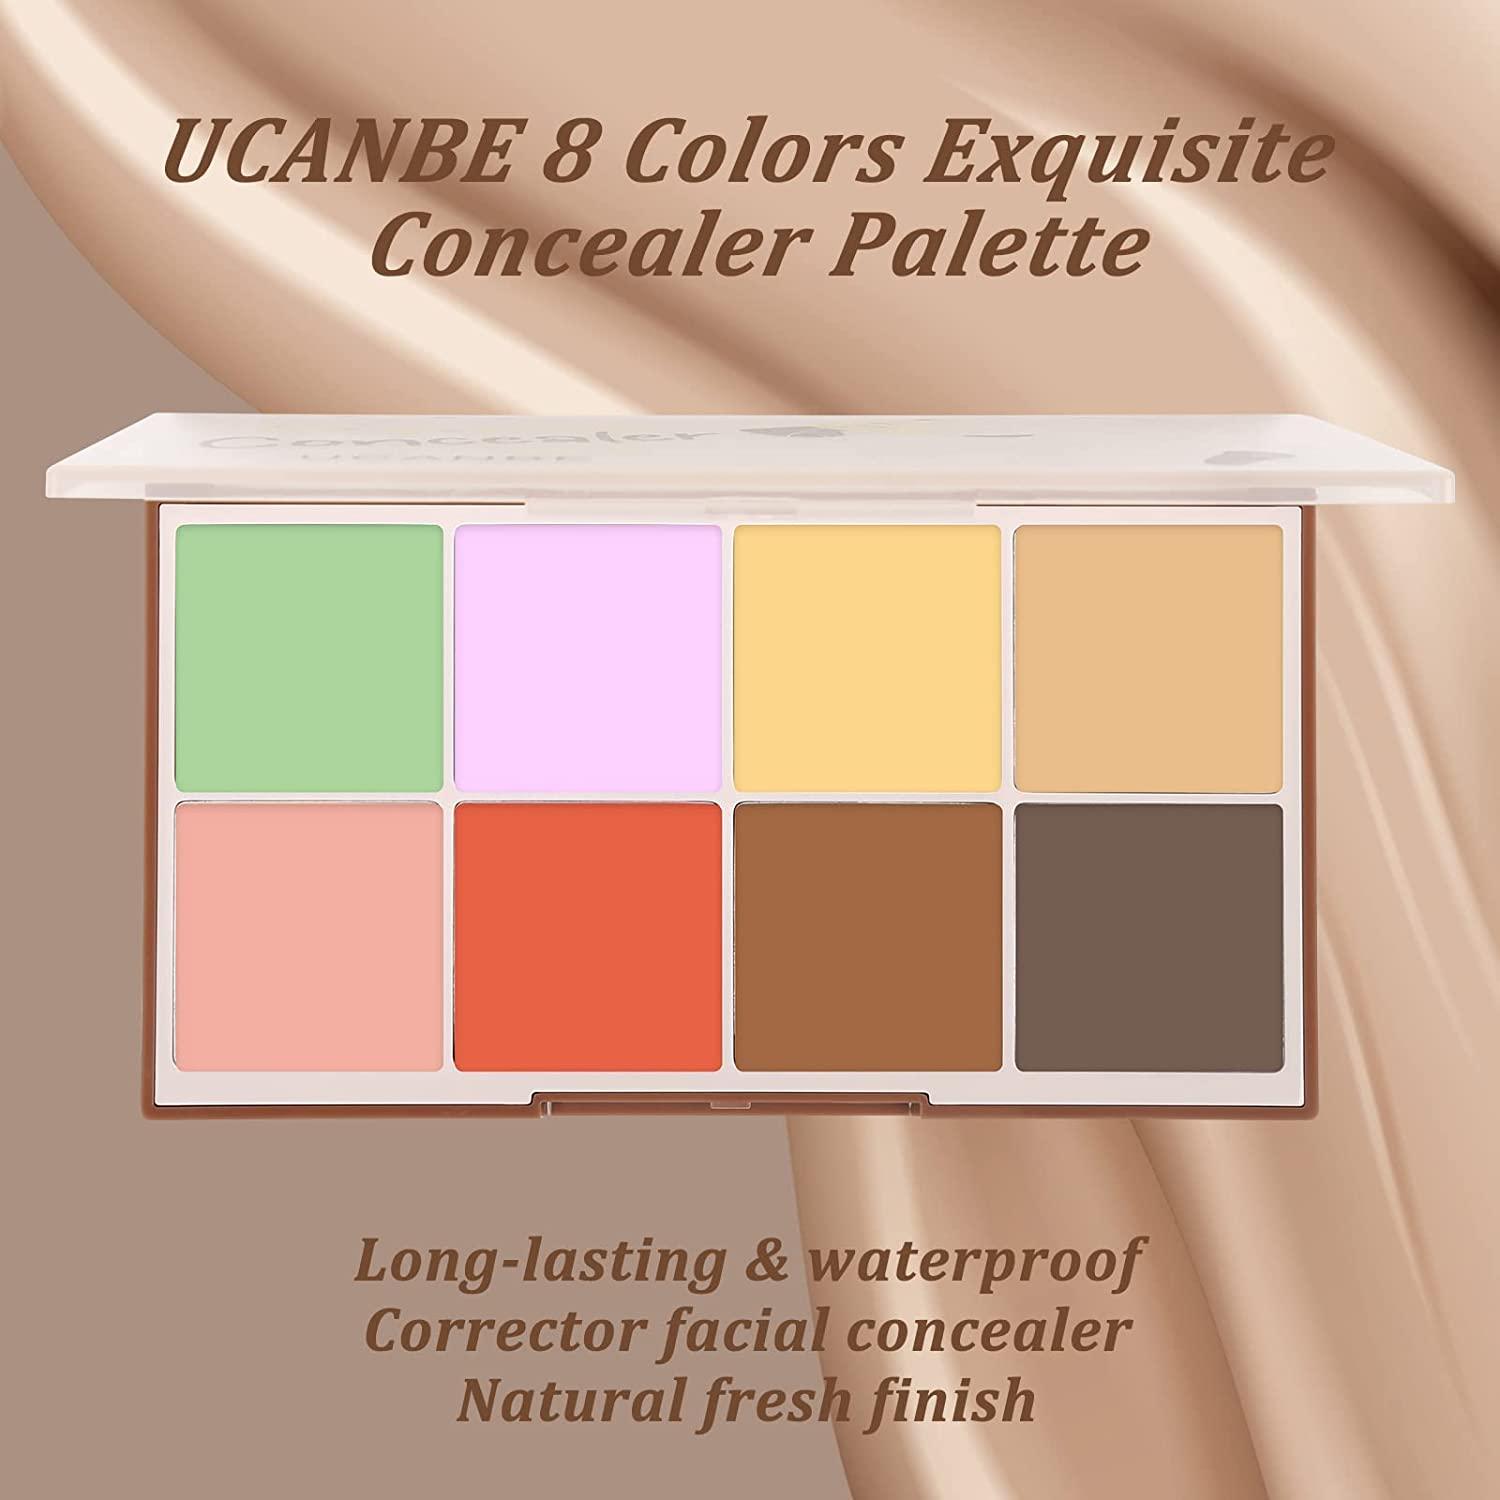 Stor mængde Panter ingeniørarbejde UCANBE Face Concealer Contour Cream Makeup Palette - 8 Colors Exquisite  Facial Camouflage Contouring Corrector Pallet Full Coverage Make Up Kit (01)